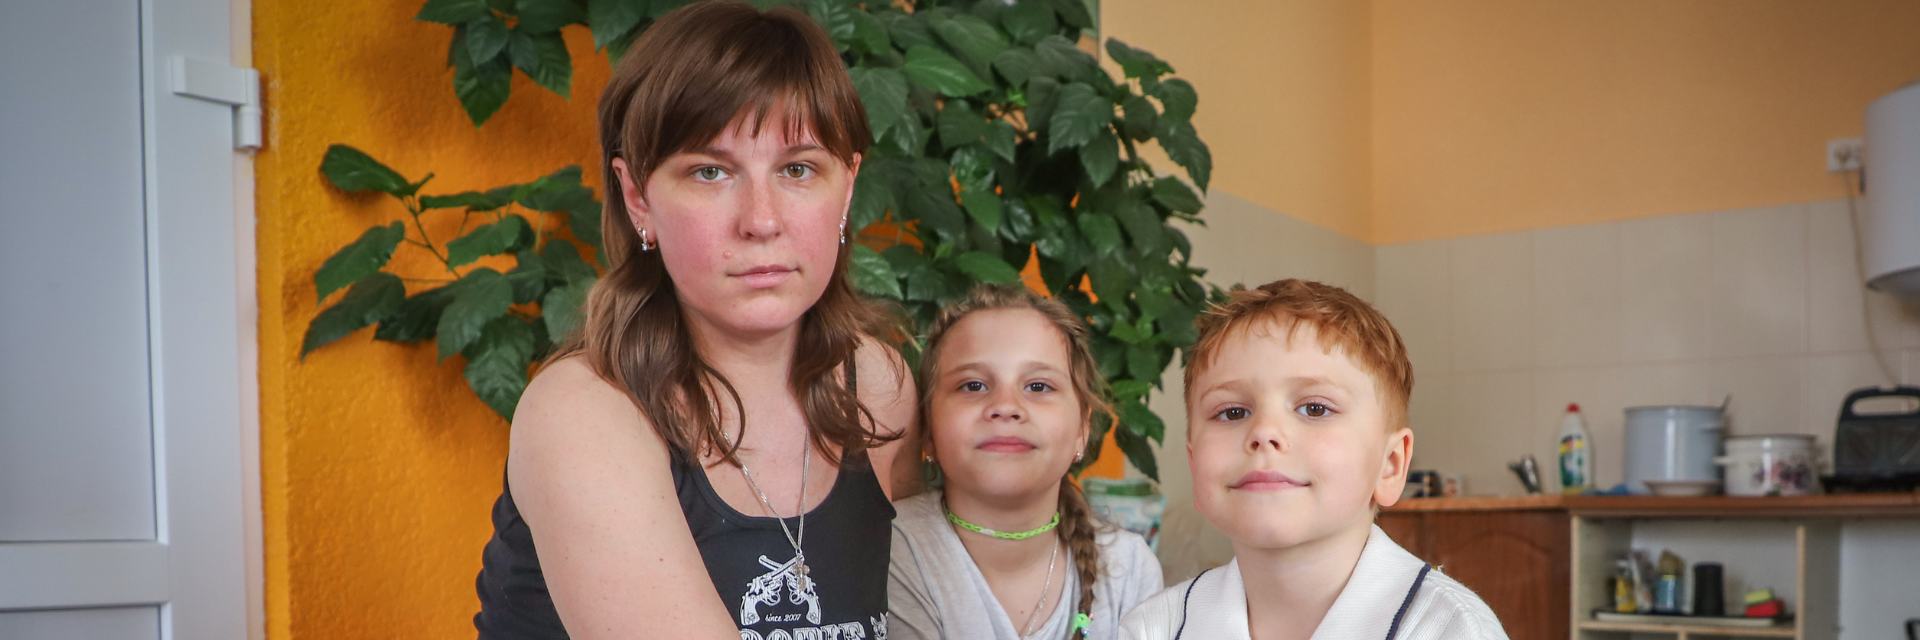 Irina with her children, Polina and Dimitro